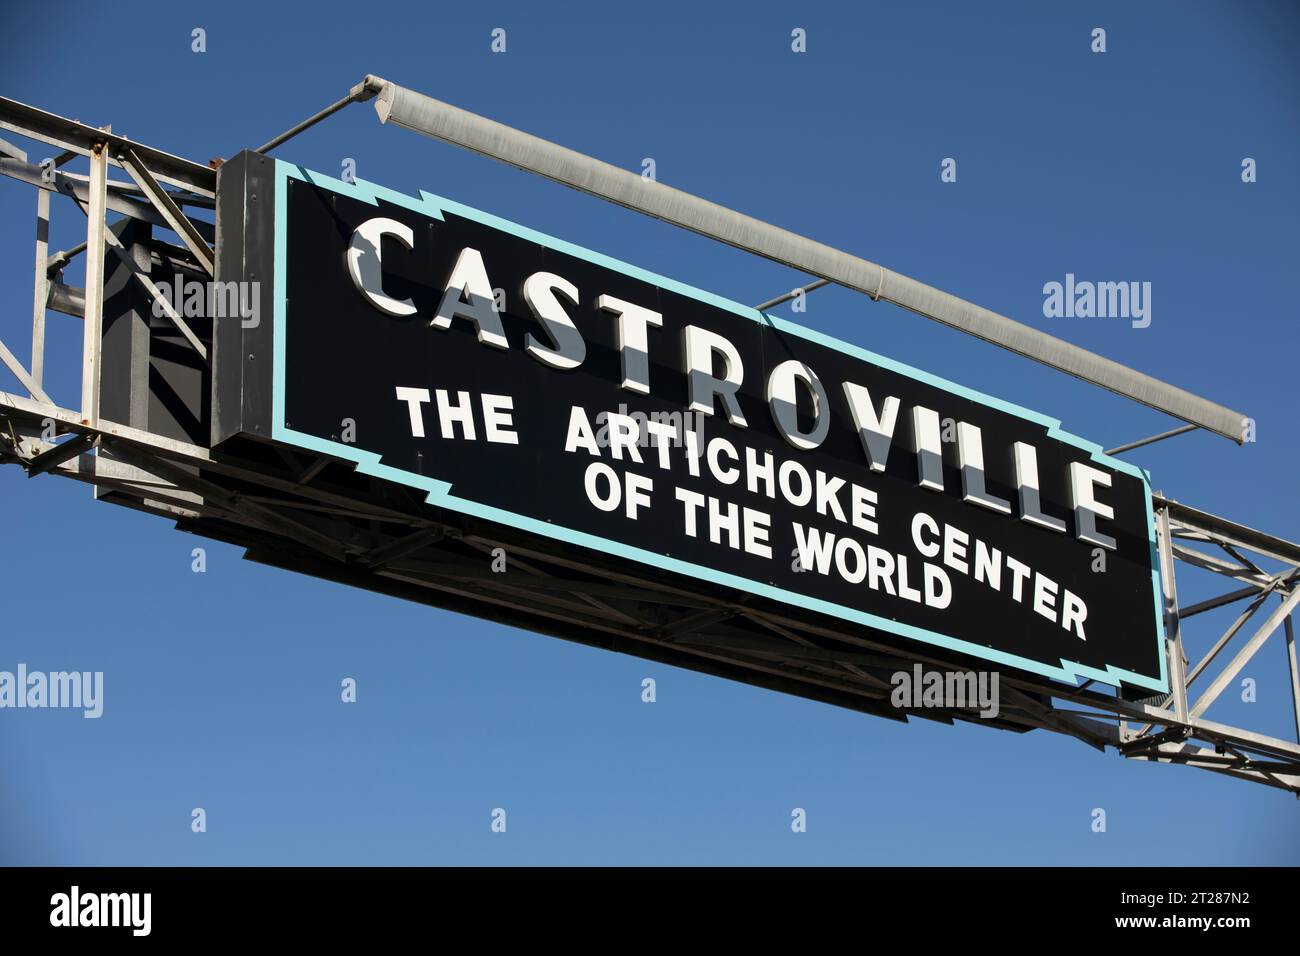 Castroville, Californie, États-Unis - 1 janvier 2023 : le soleil de l'après-midi brille sur un panneau de bienvenue Castroville dans le centre-ville historique. Banque D'Images